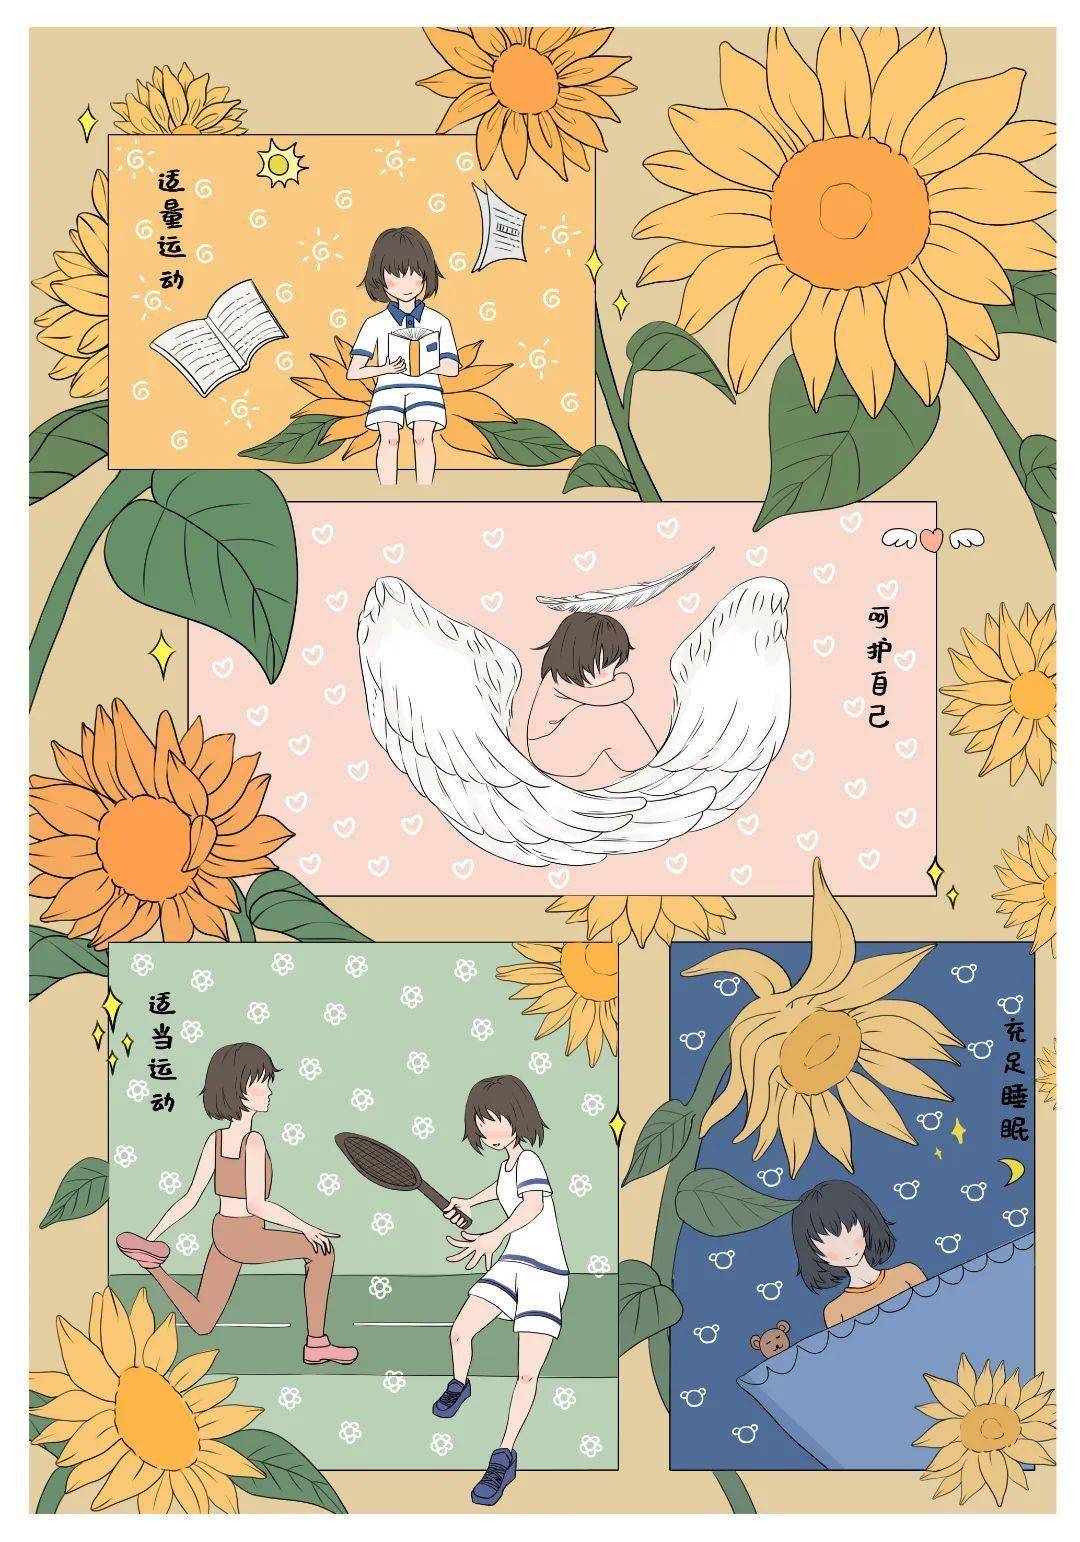 心理海报漫画设计大赛:妙手丹青,美丽心灵为引导大学生树立"珍爱生命